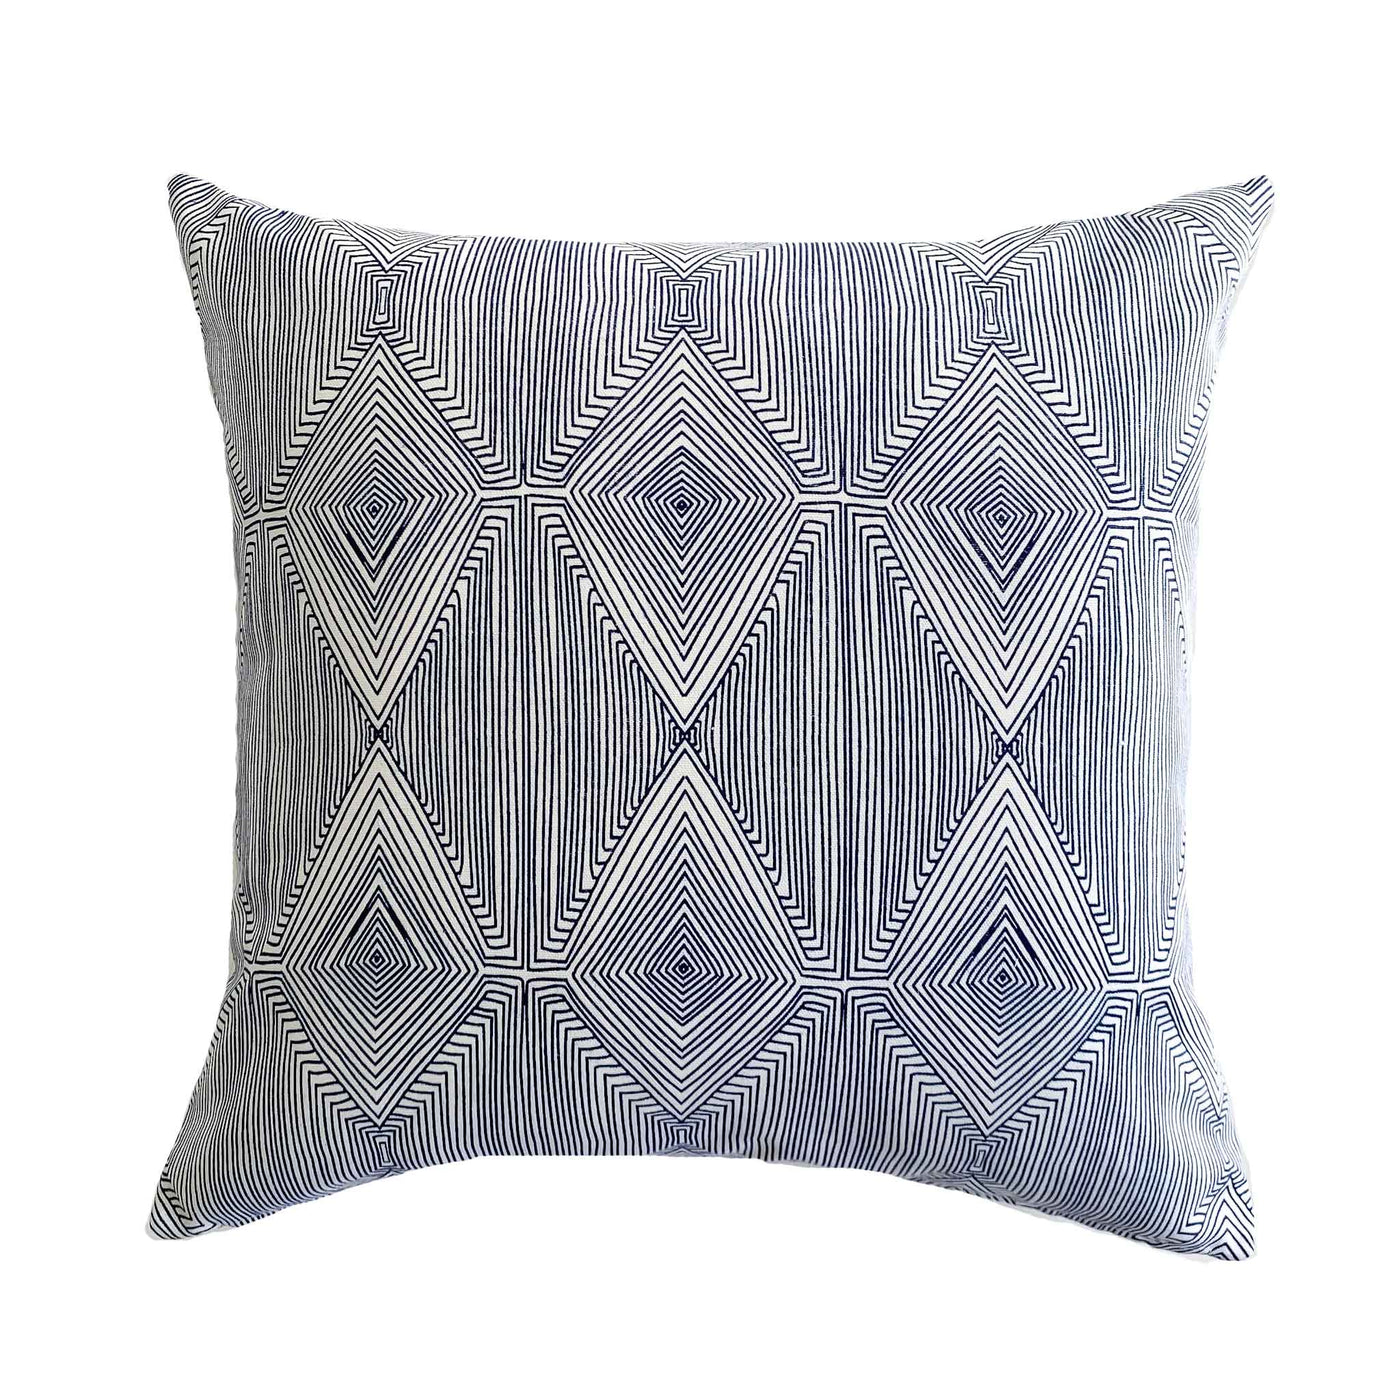 Blue Boho Style Pillow Cover - Everett - Studio Pillows